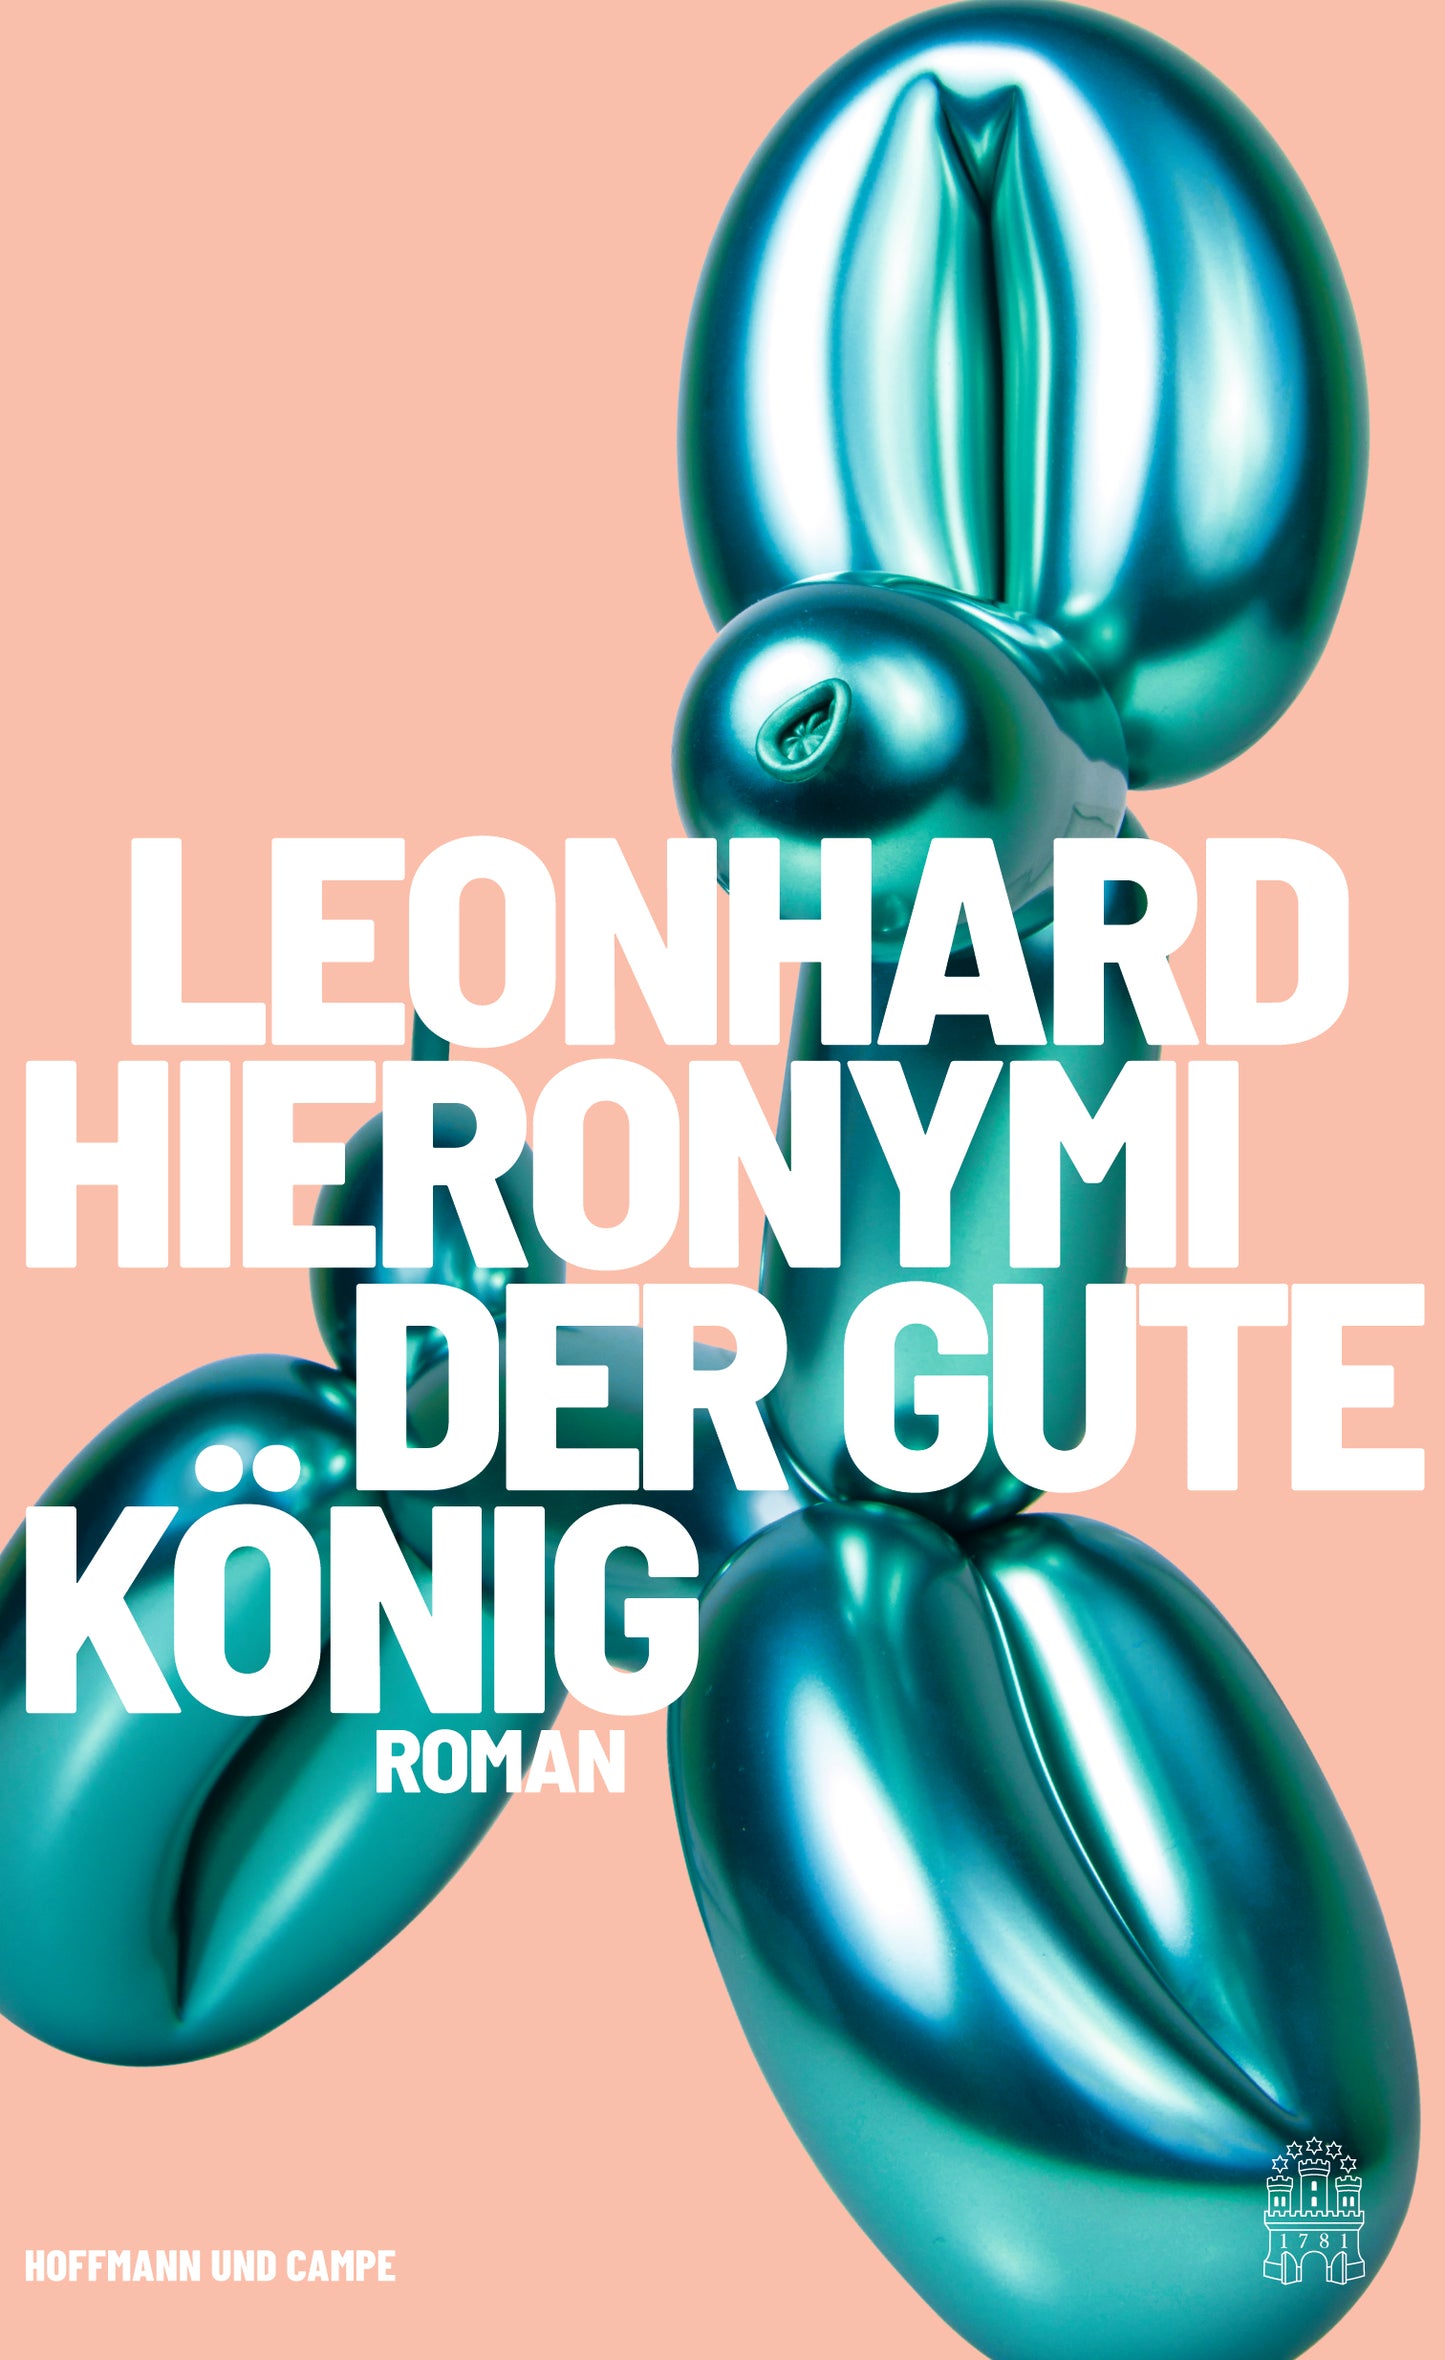 Der gute König - Leonhard Hieronymi